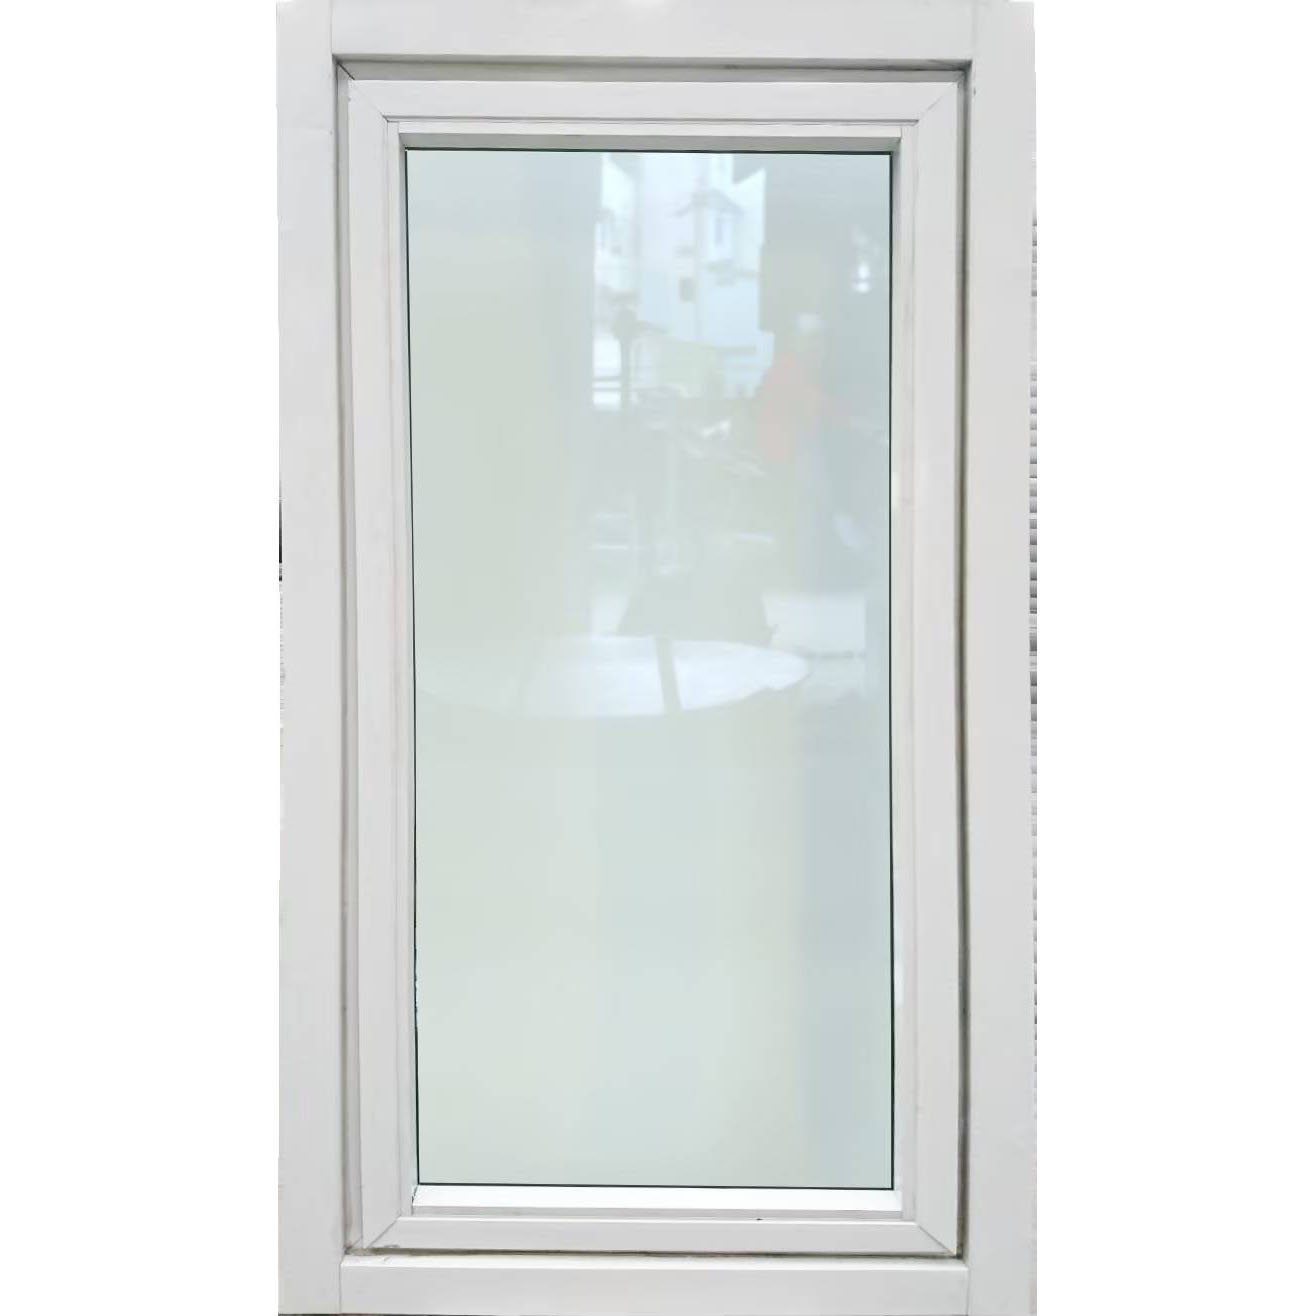 หน้าต่างบานเปิด 1ช่อง อลูมิเนียมสีอบขาว+กระจกใสเขียว+มุ้ง 60ซม.*110ซม.